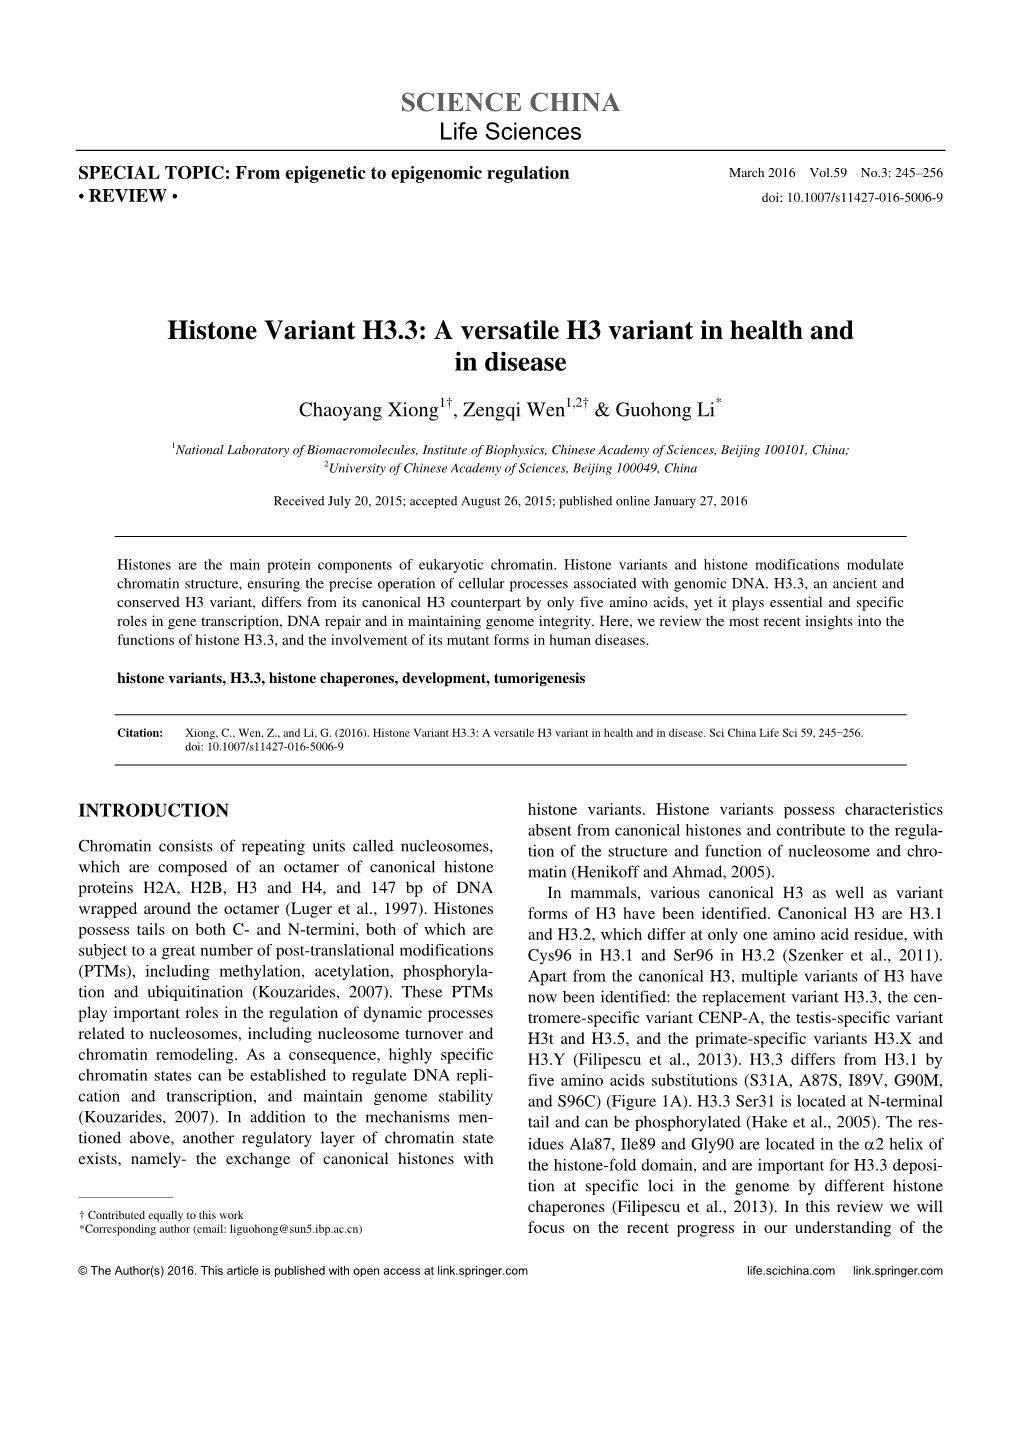 SCIENCE CHINA Histone Variant H3.3